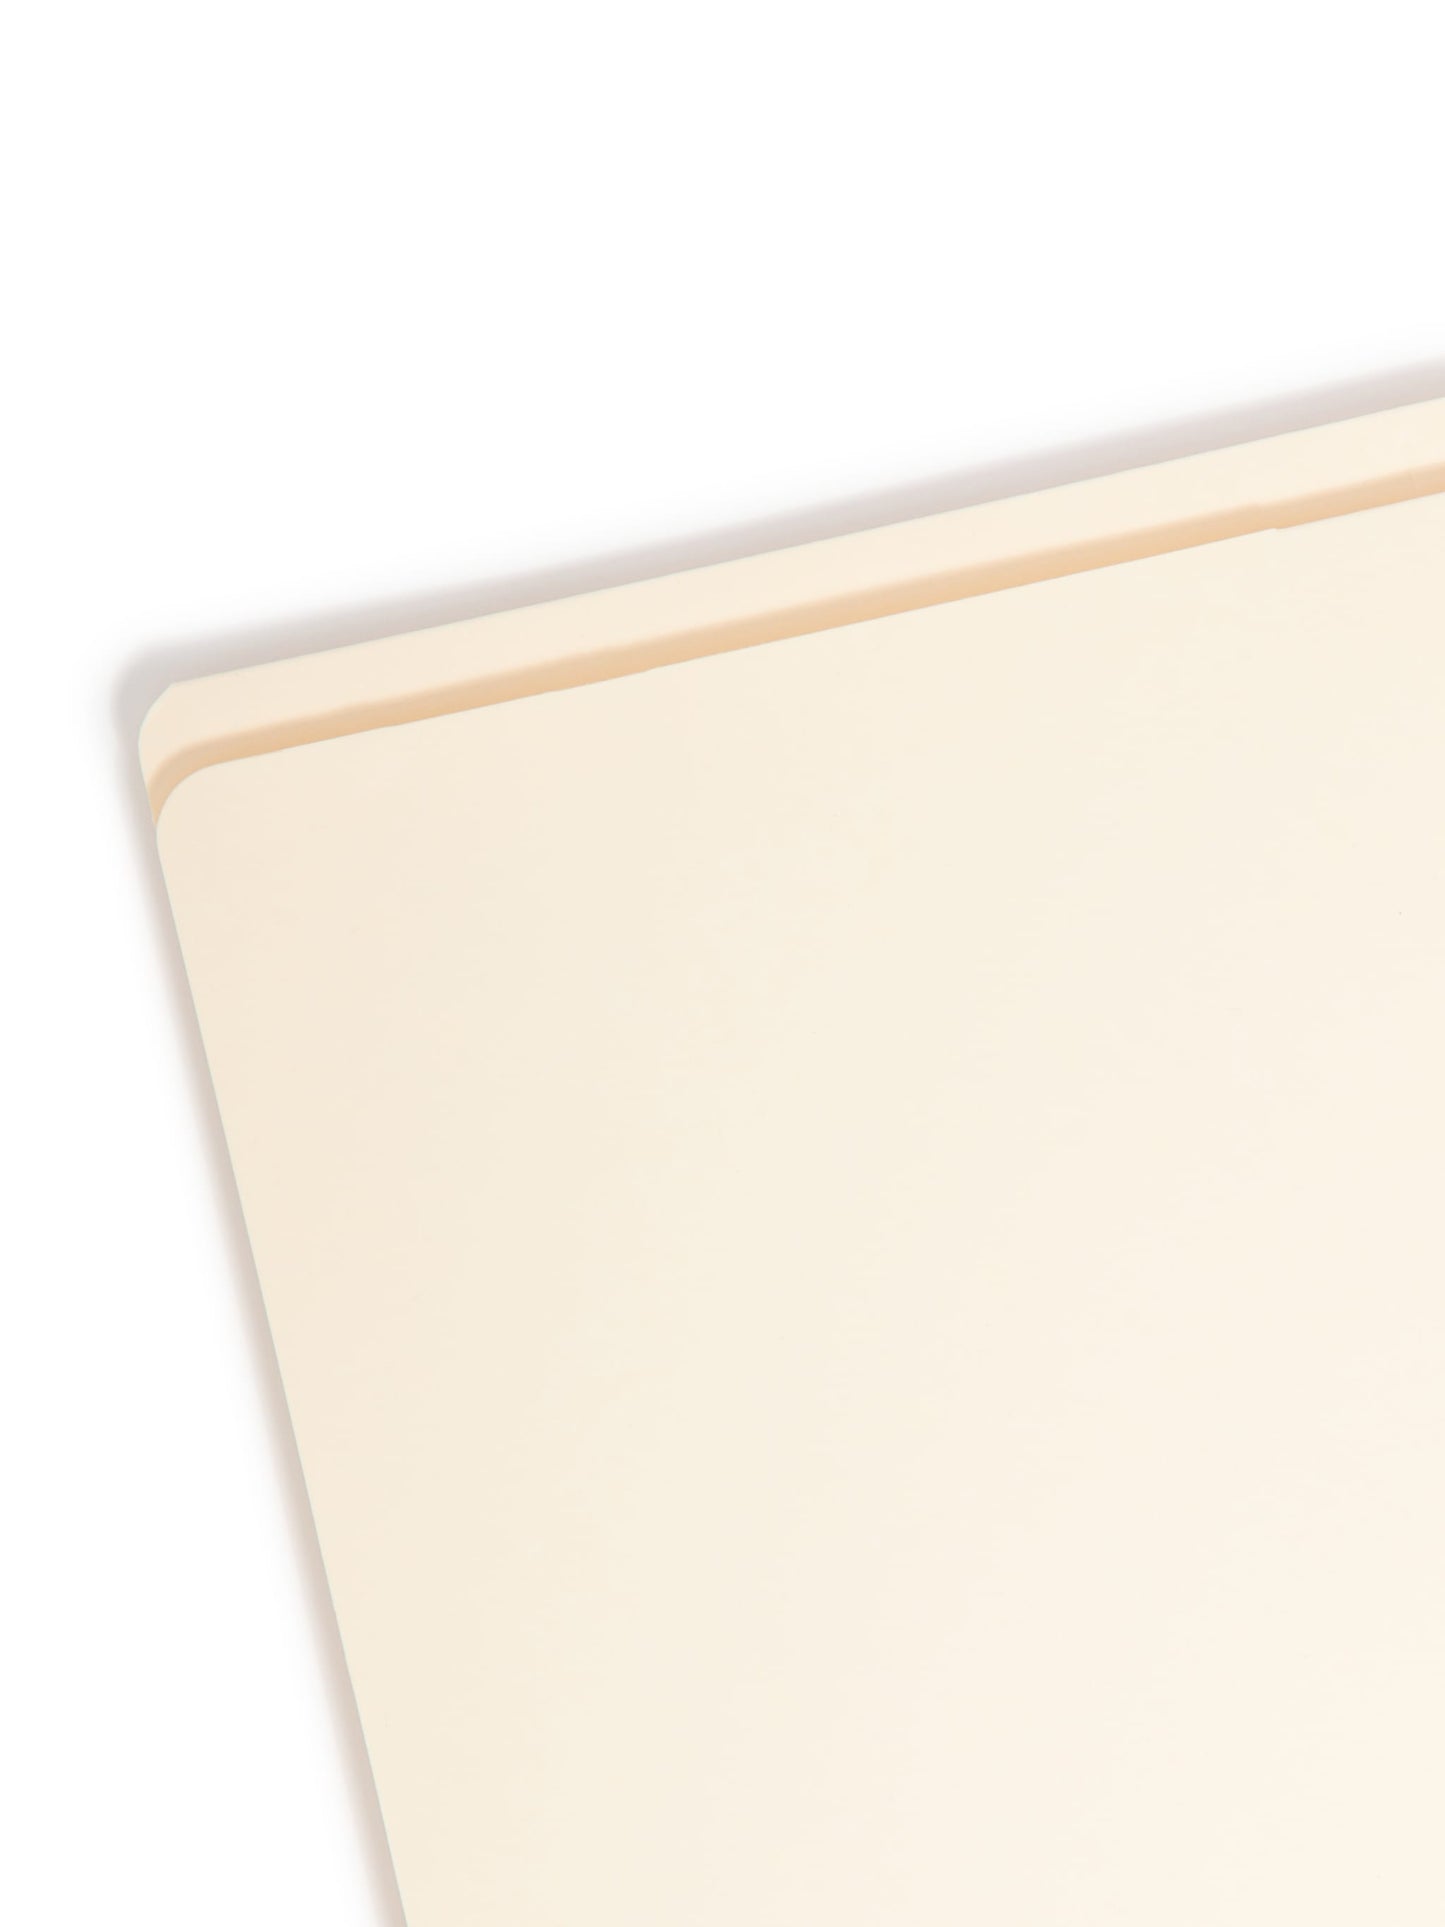 Reinforced Tab Pocket File Folders, Manila Color, Letter Size, Set of 50, 086486103152